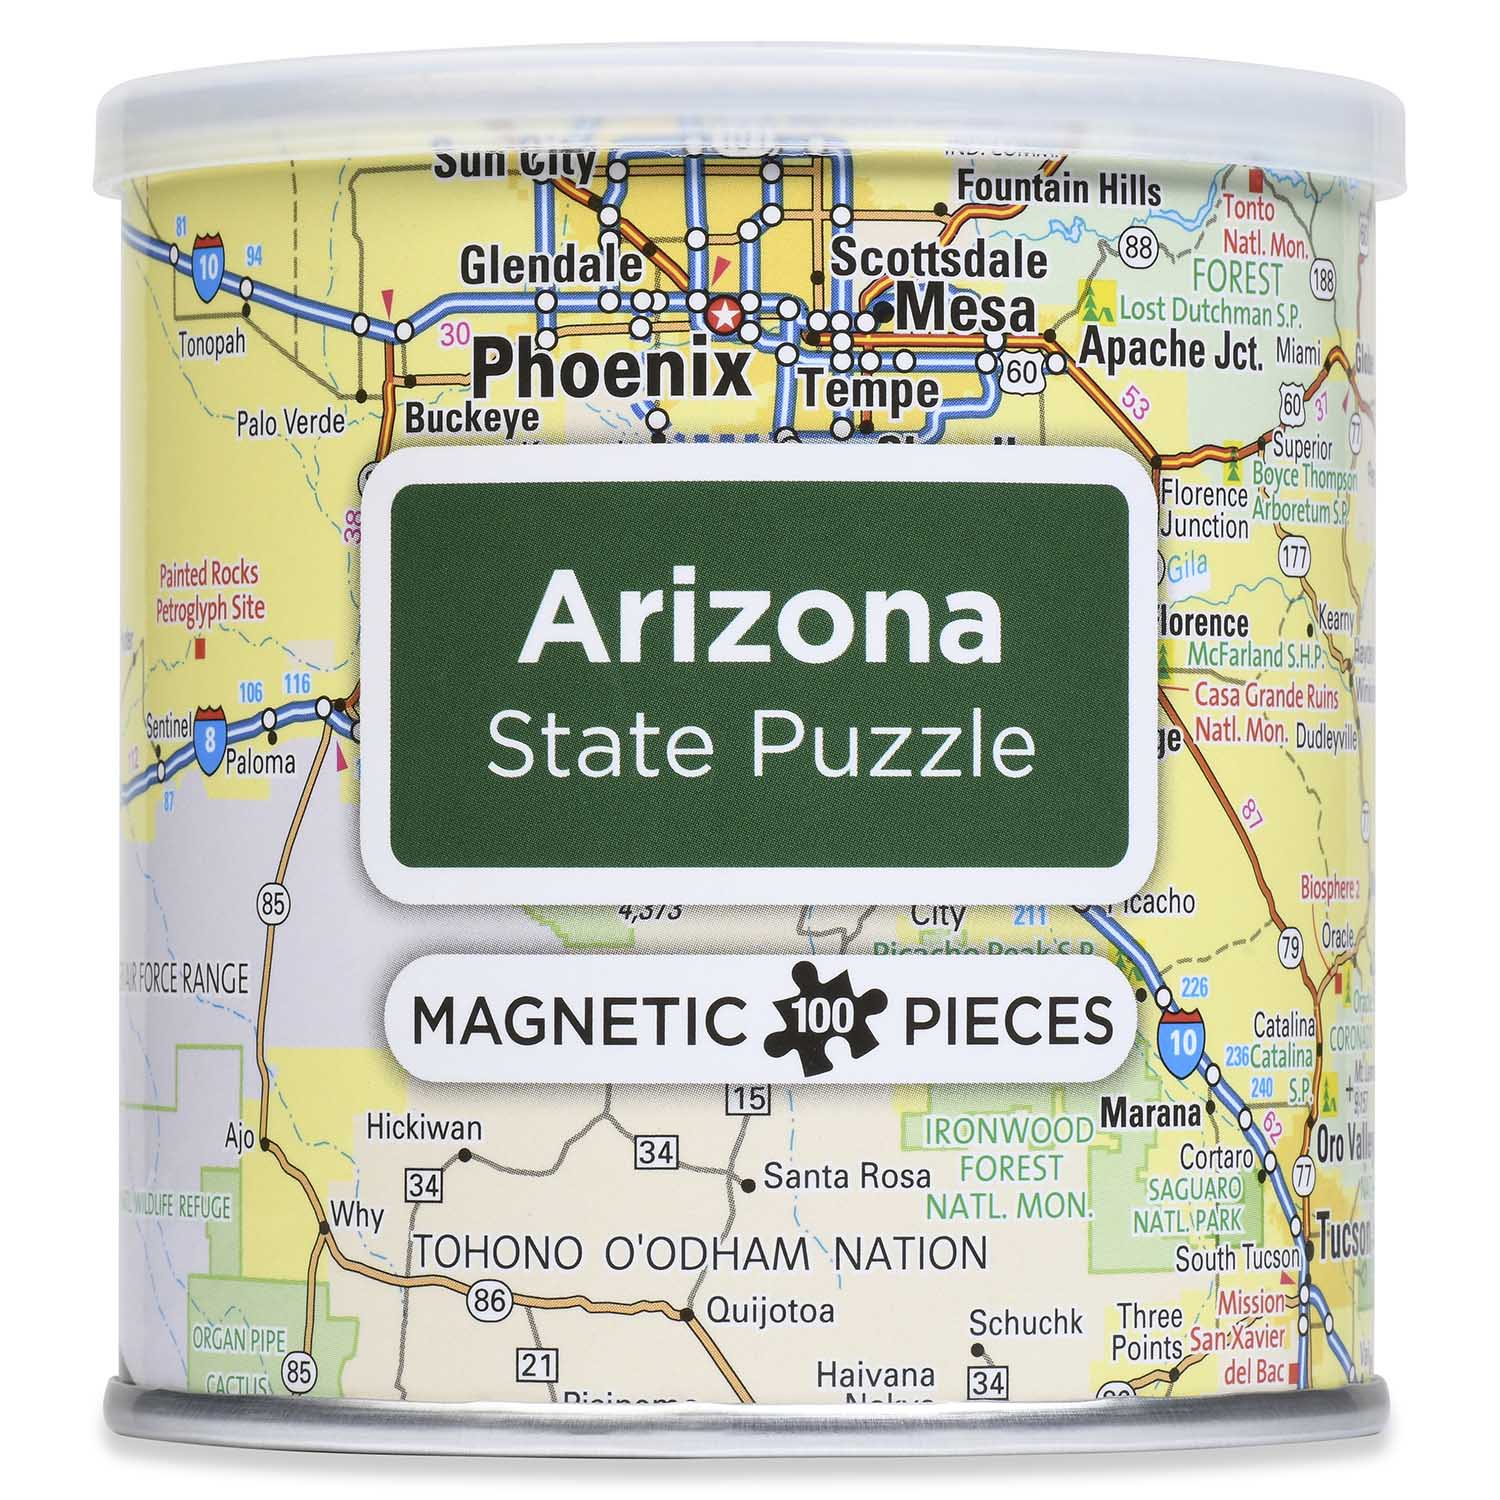 City Magnetic Puzzle Arizona